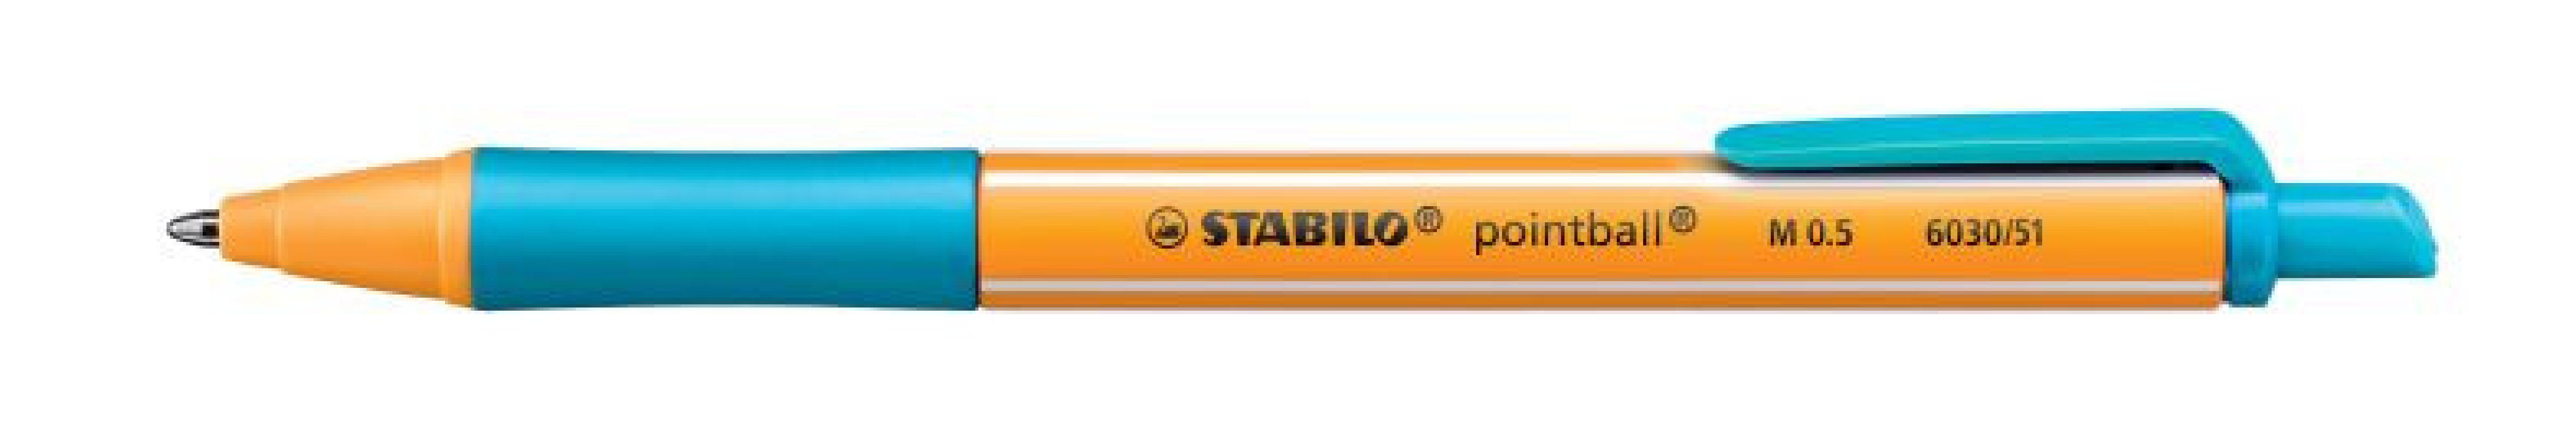 Στυλό Διαρκείας Pointball Τιρκουάζ 6030/51 Stabilo